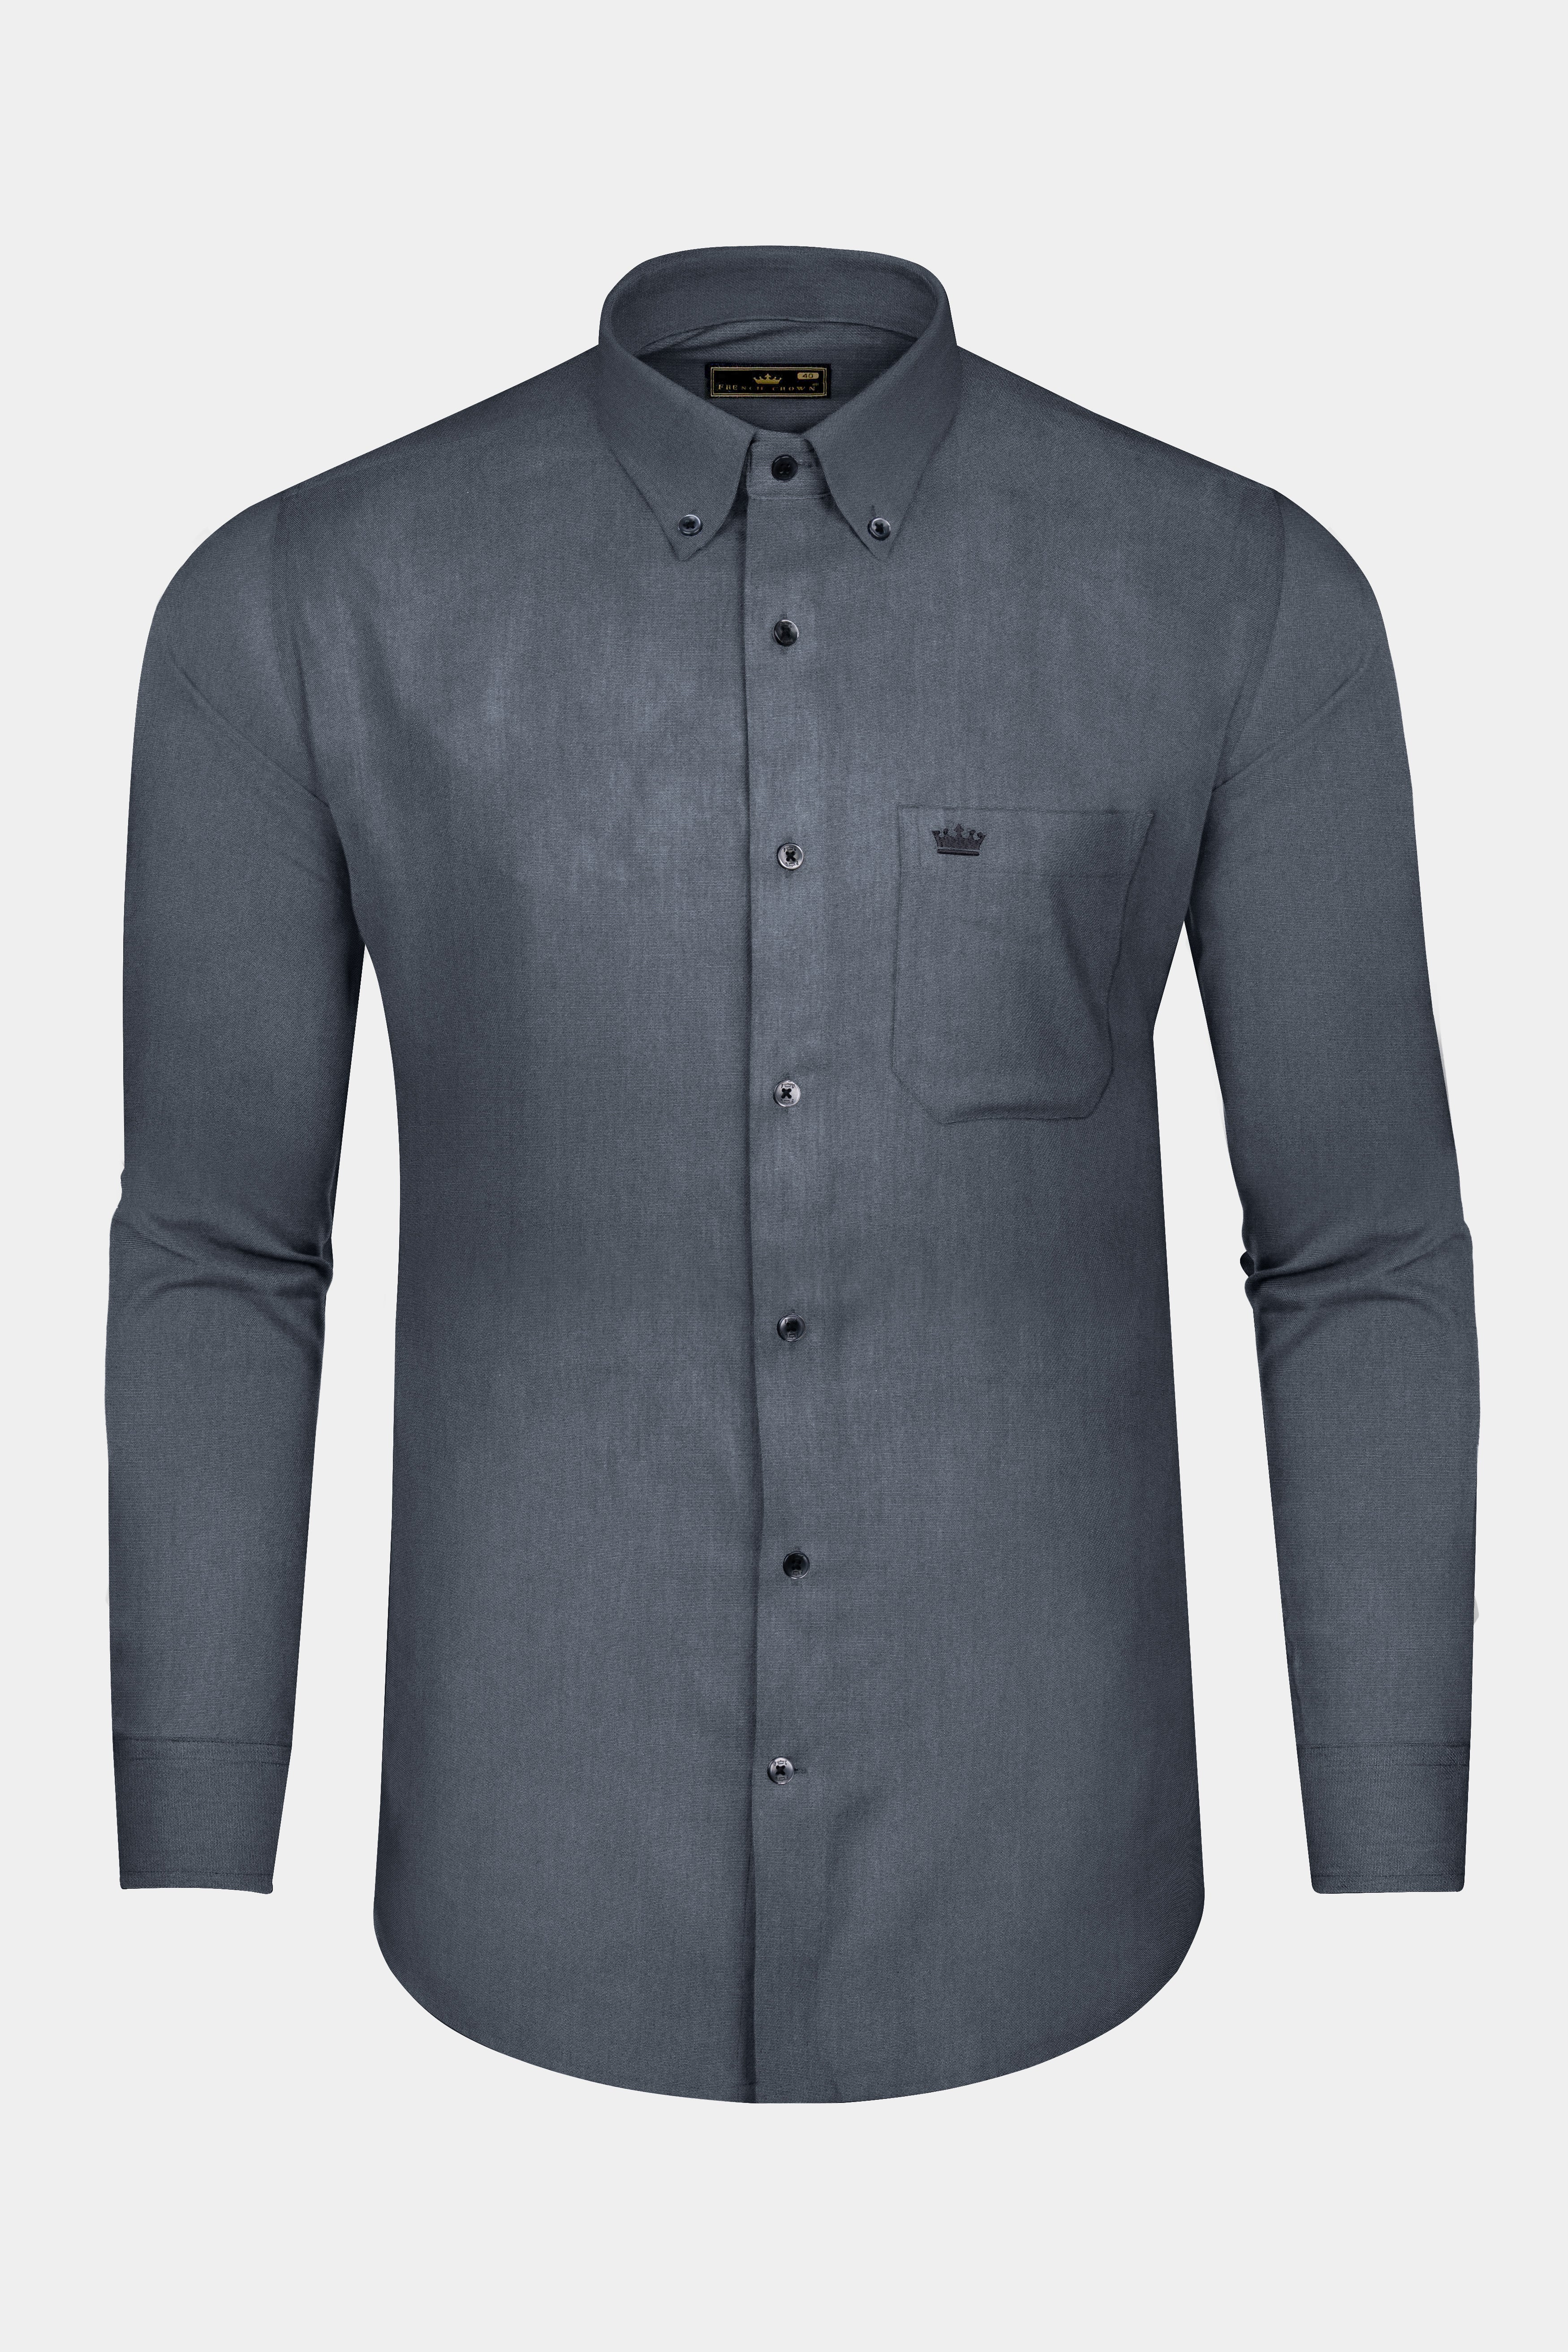 Trout Gray Oxford Cotton Shirt